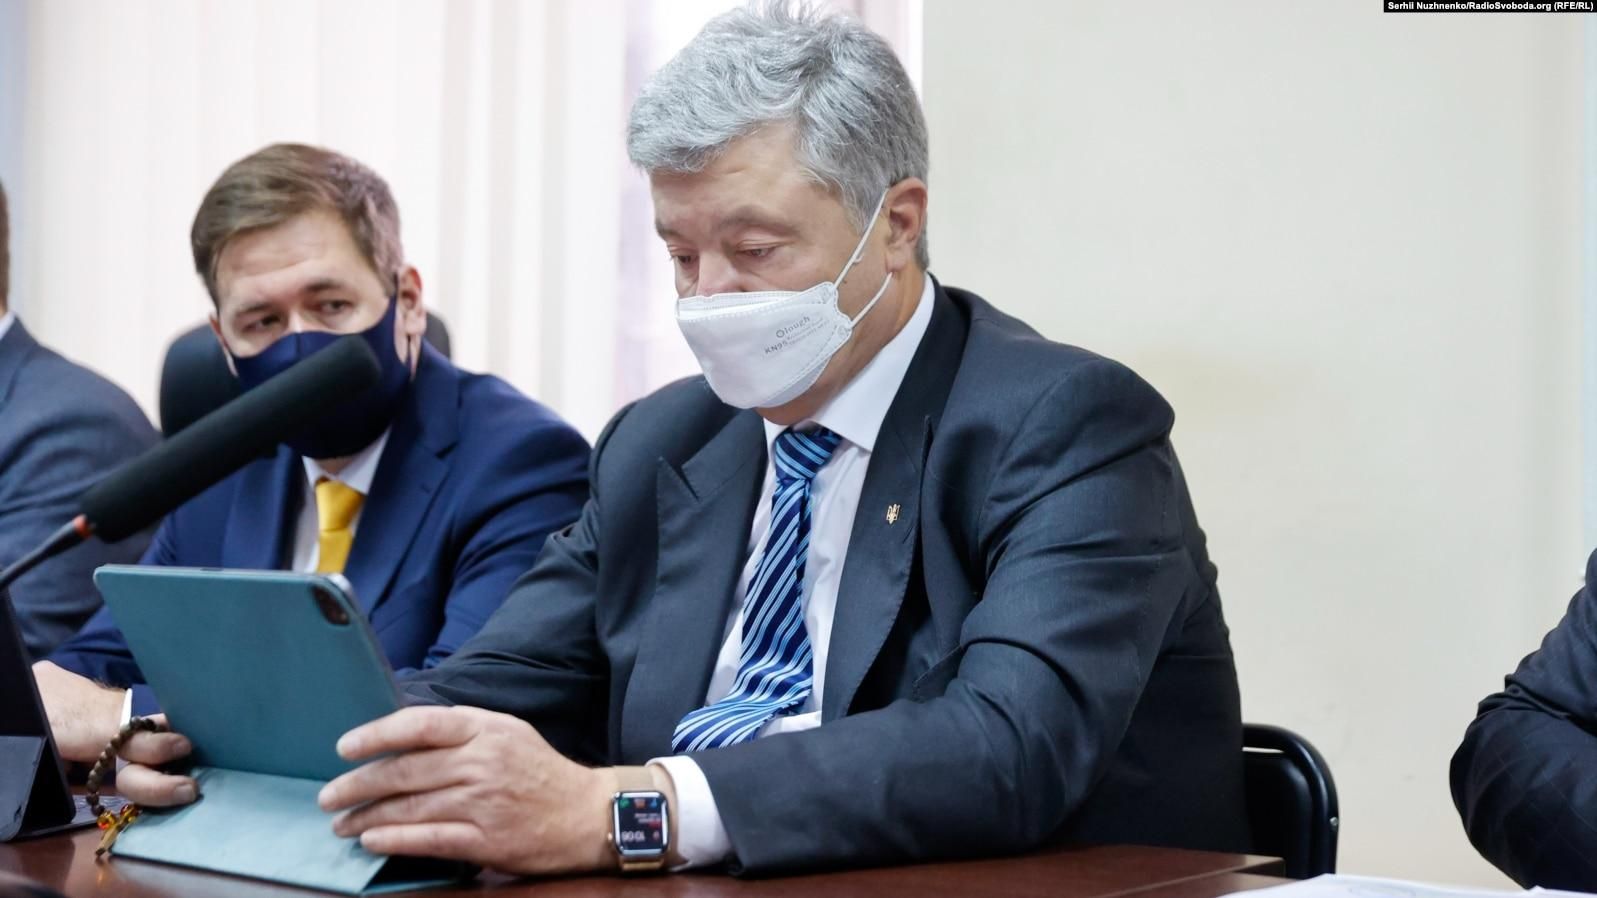 Ганебні звички старої політики, – у "Слузі народу" відреагували на суд над Порошенком - Україна новини - 24 Канал